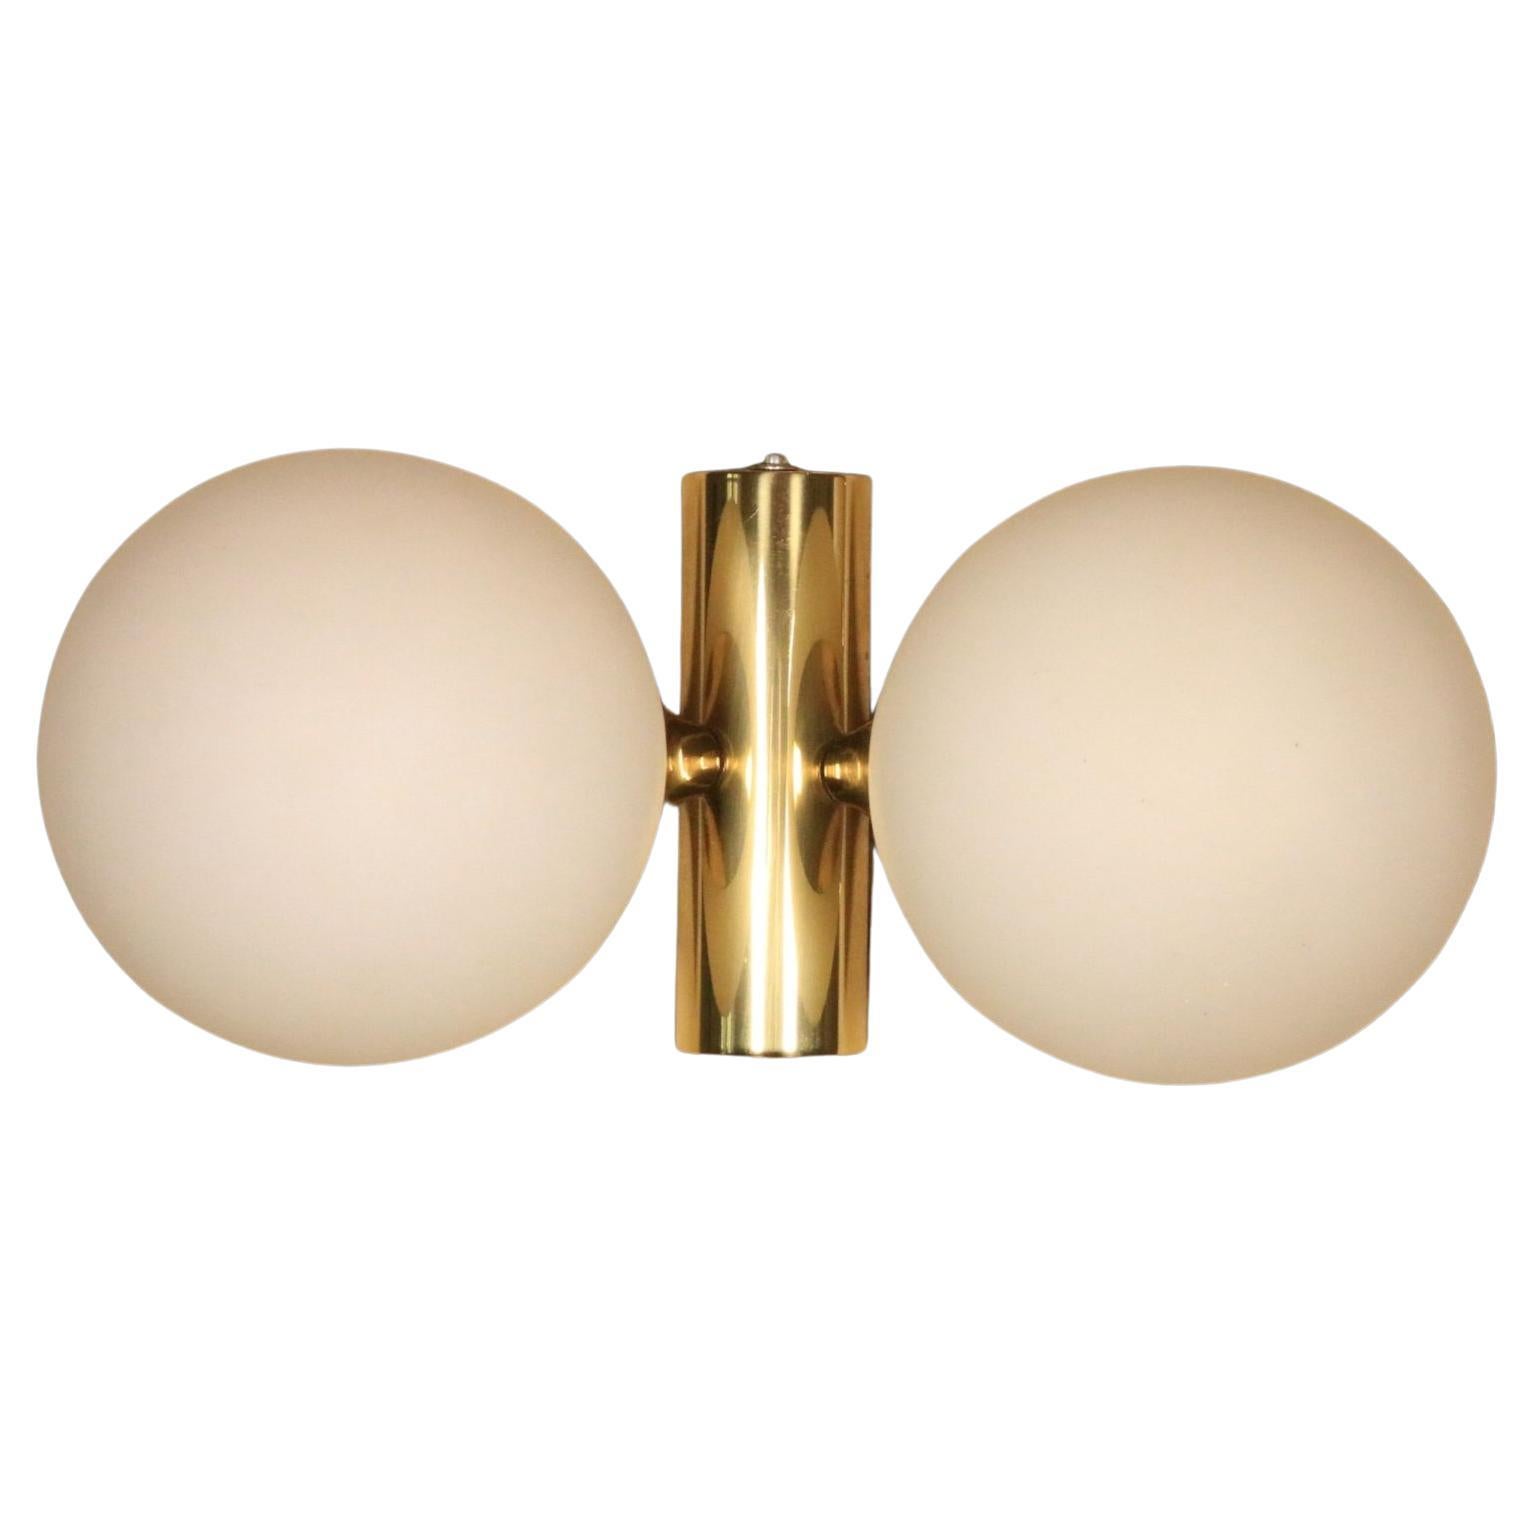 Elegant Wall Light, Brass / Opaque Glass Balls, Kaiser Leuchten, 1970s For Sale